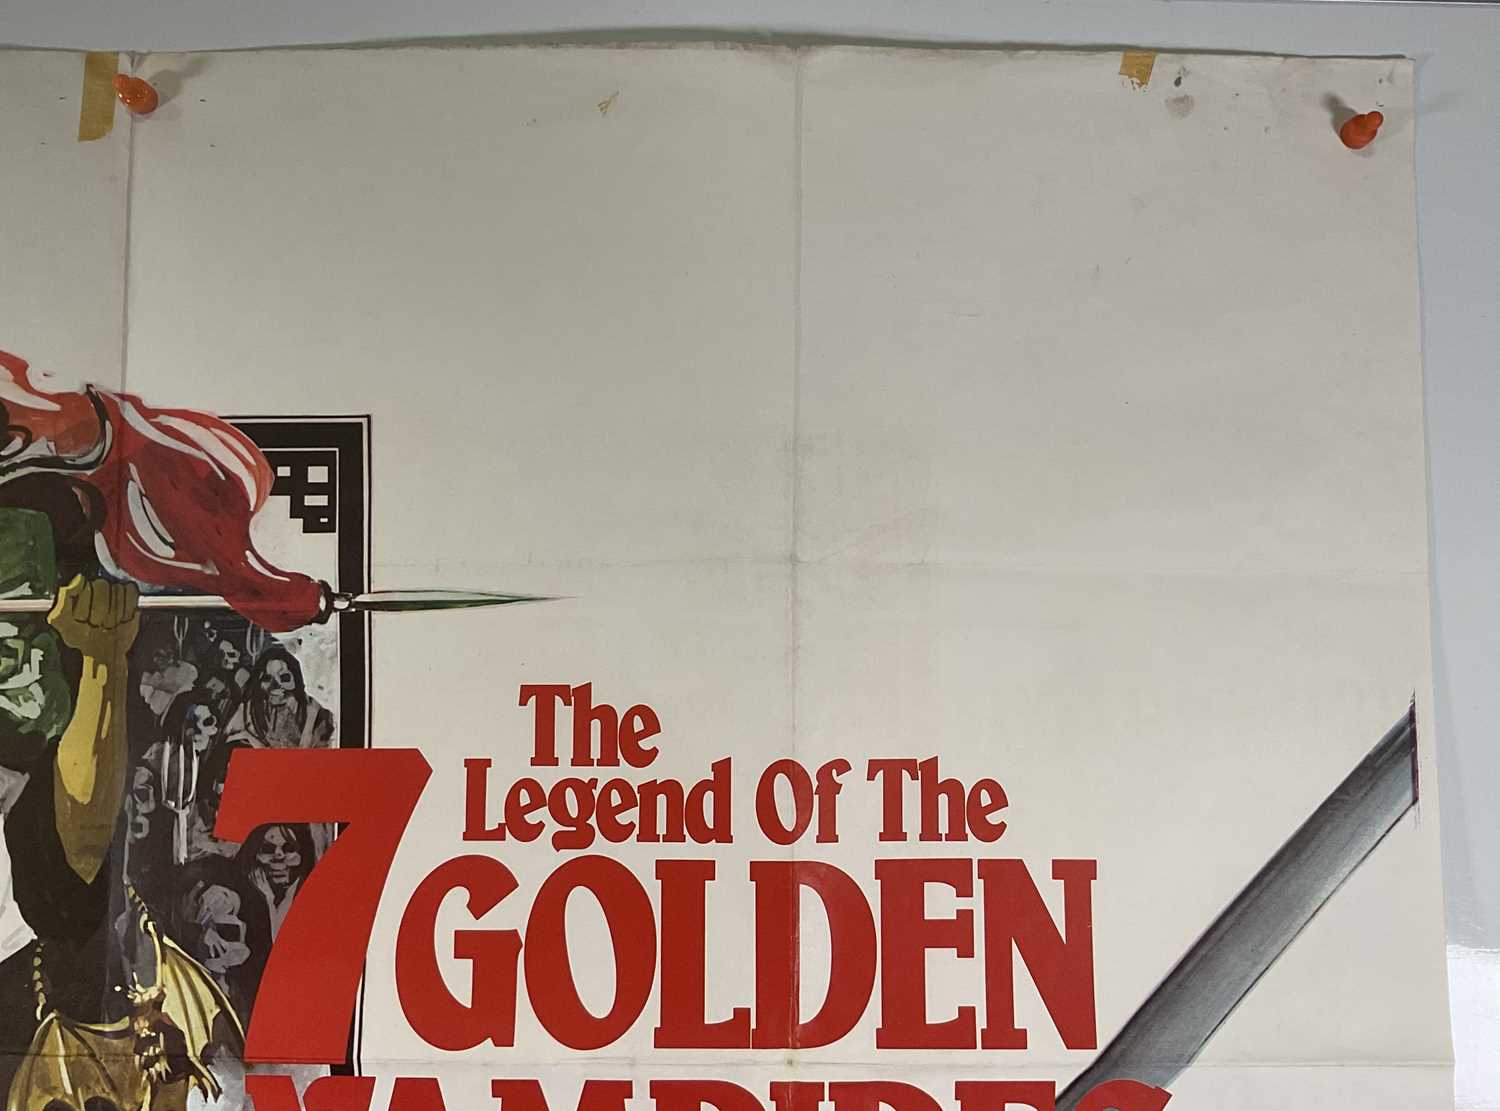 LEGEND OF THE 7 GOLDEN VAMPIRES (1974) UK Quad film poster, Hammer Horror starring Peter Cushing, - Image 5 of 6